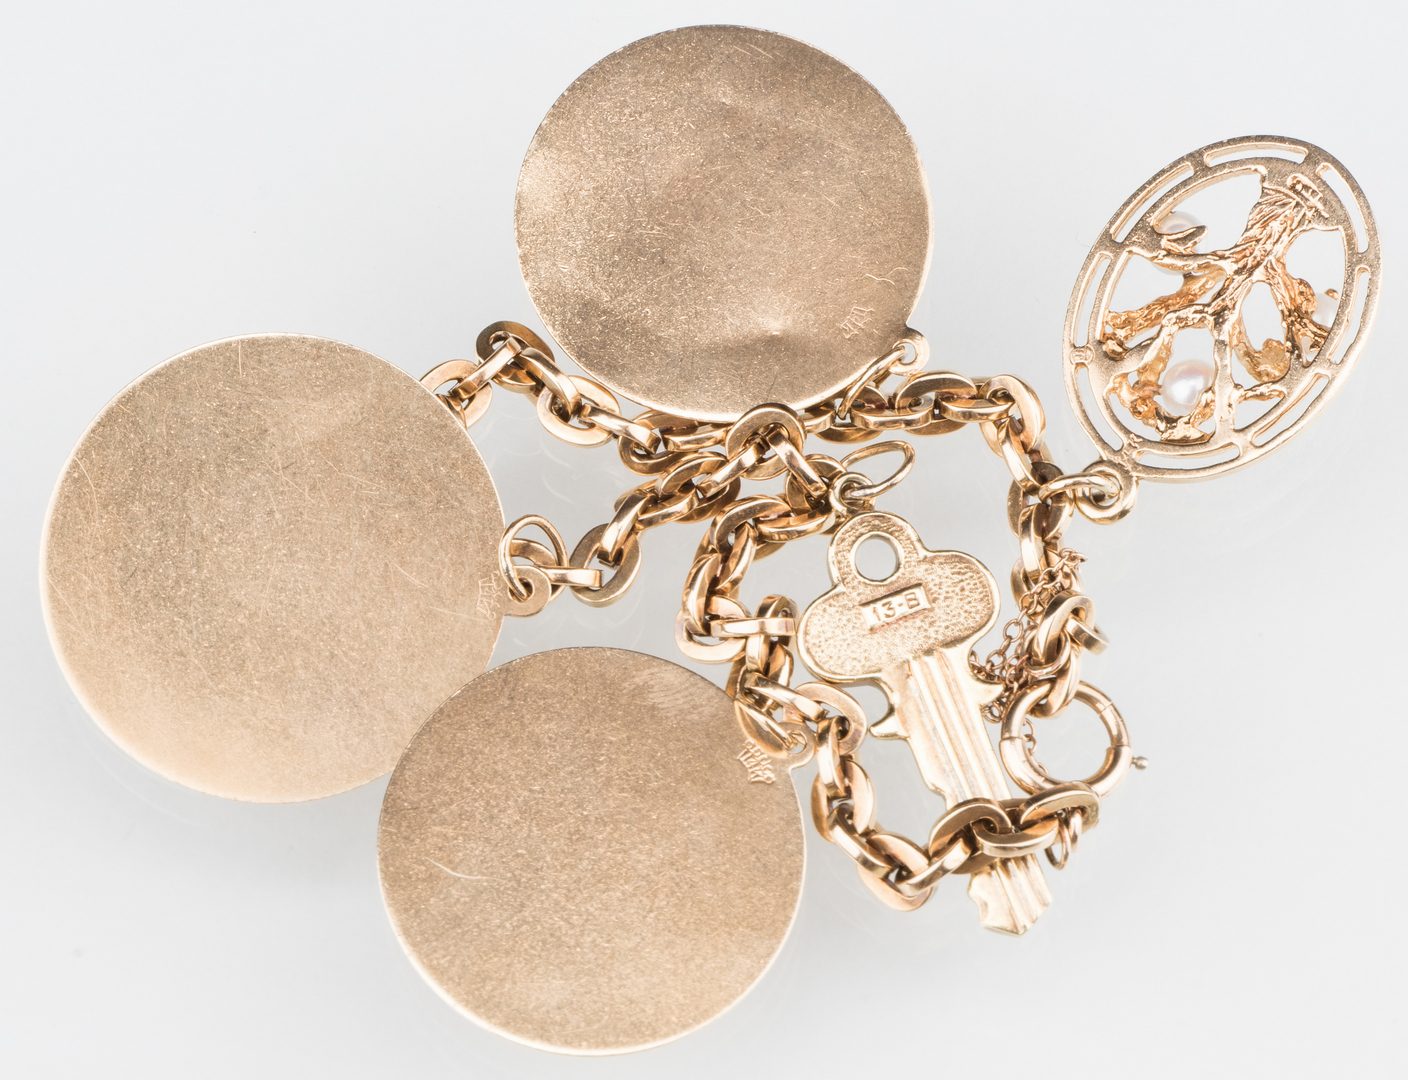 Lot 529: 10K Gold Charm Bracelet, 14K charms